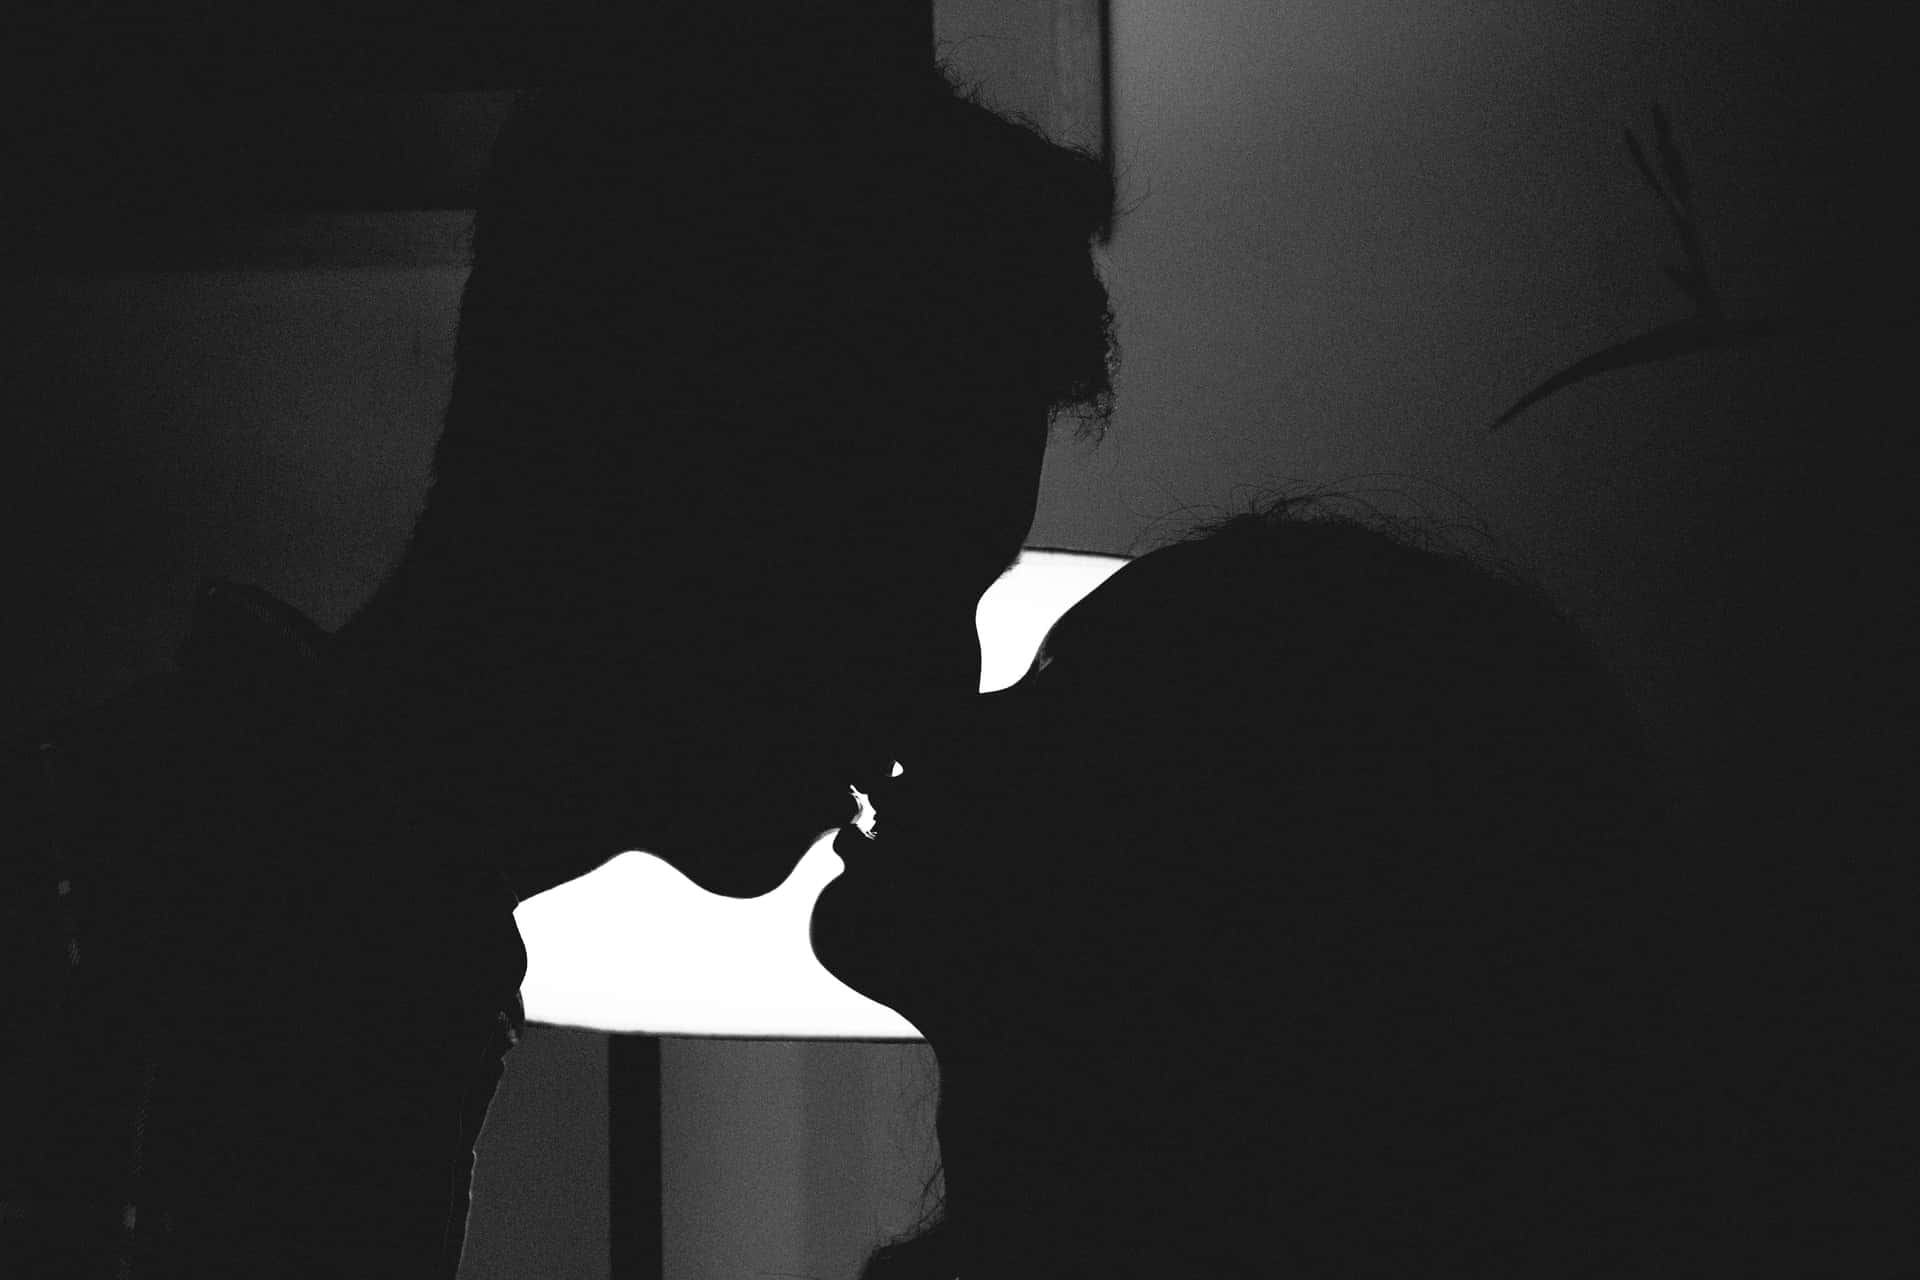 Etpar, Der Kysser I Mørket